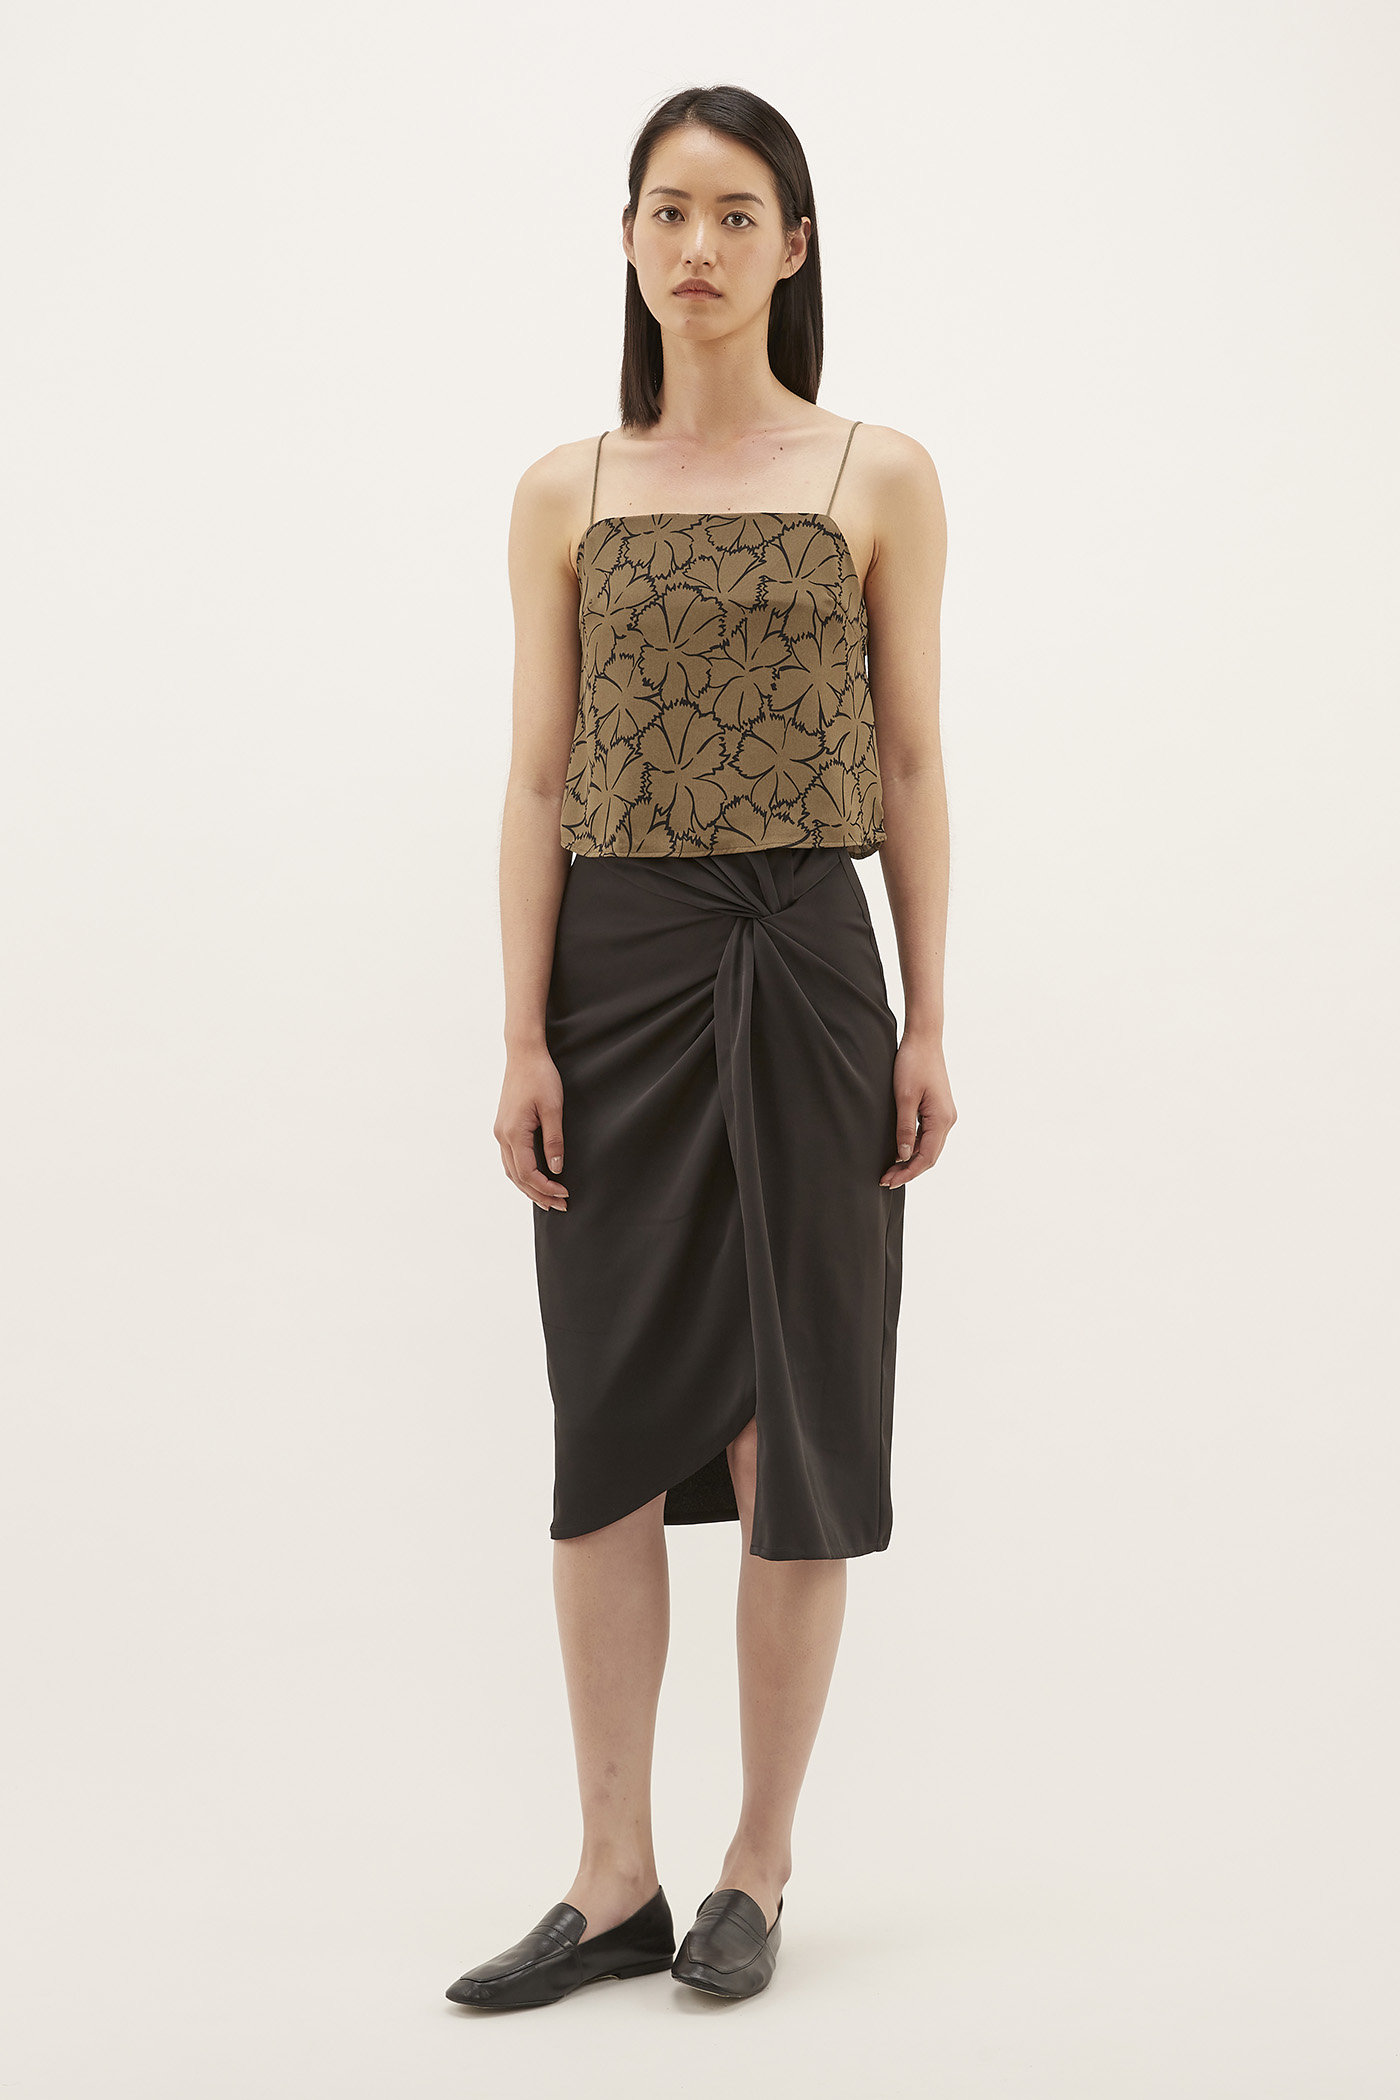 Veanna Twist-front Skirt